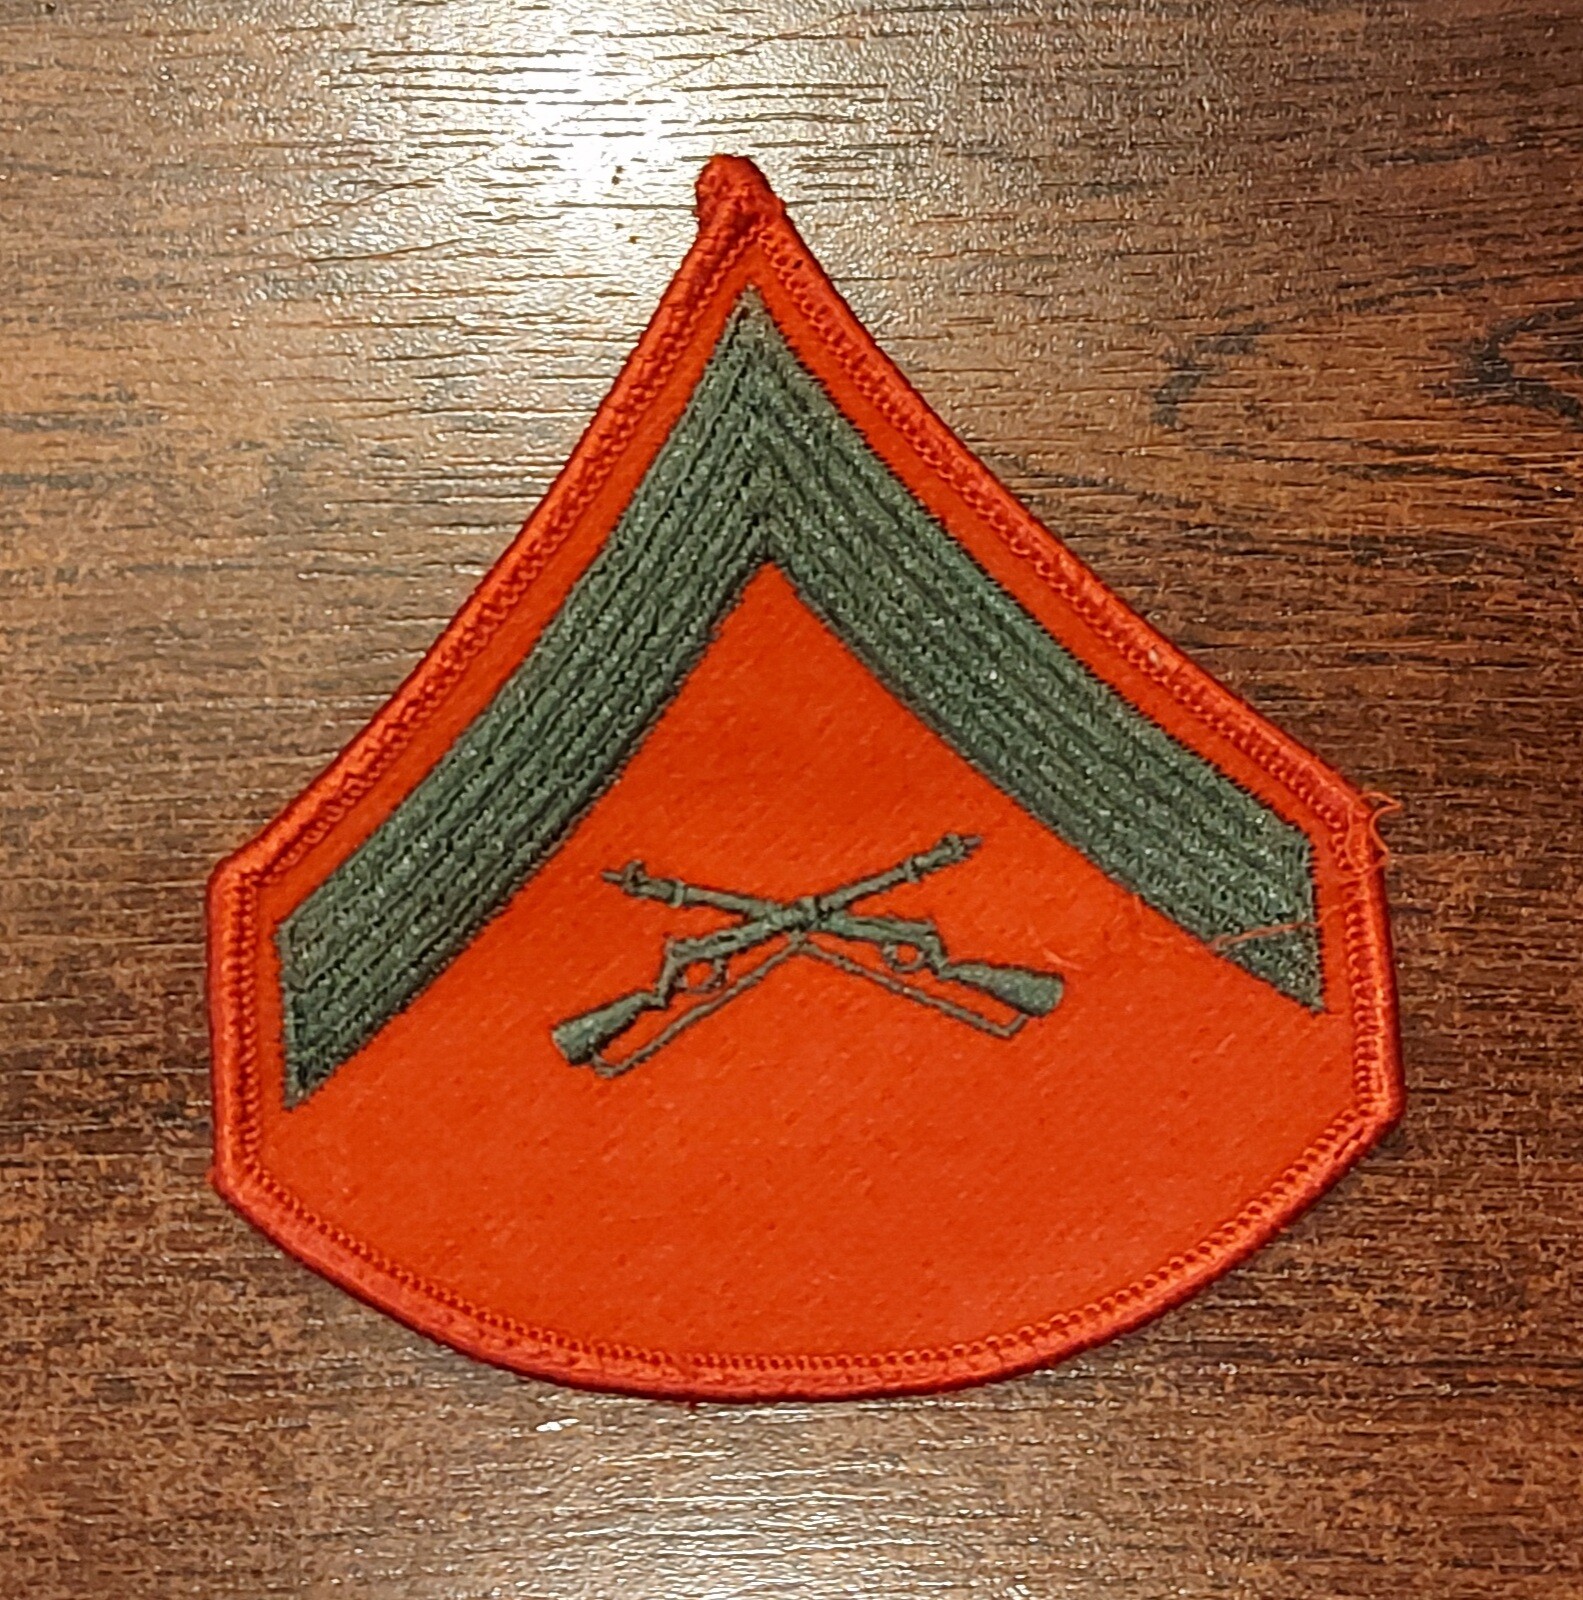 Naszywka - Szewron Lance Corporal - Zielony/Czerwony - Bez rzepu